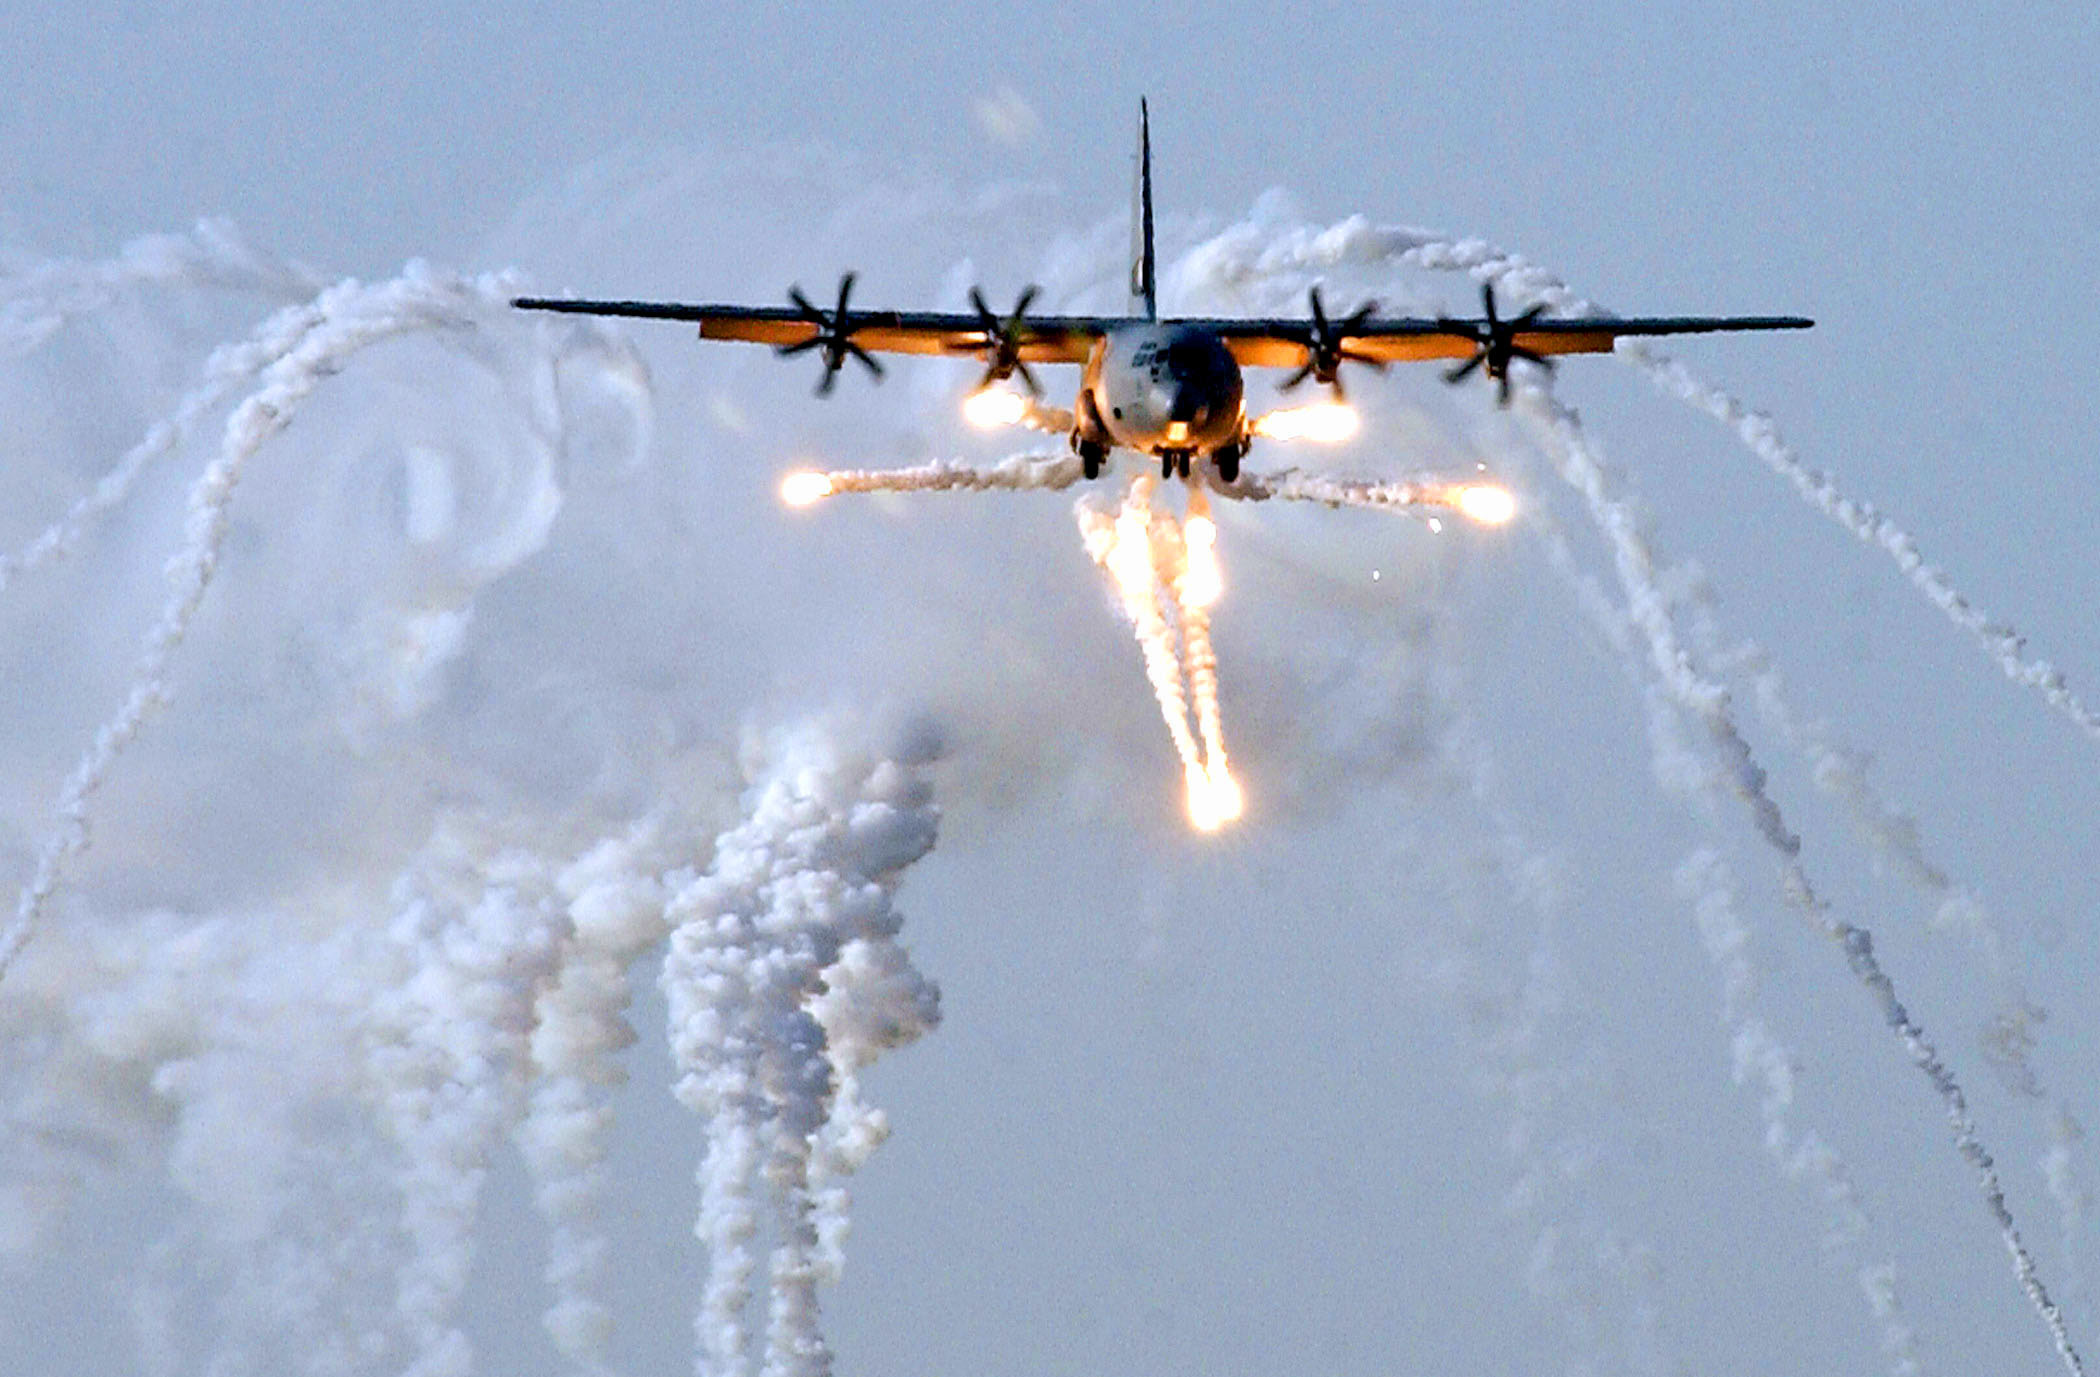 самолет, военный, дым, AC - 130 Spooky / Spectre, самолеты, вспышки - обои на рабочий стол